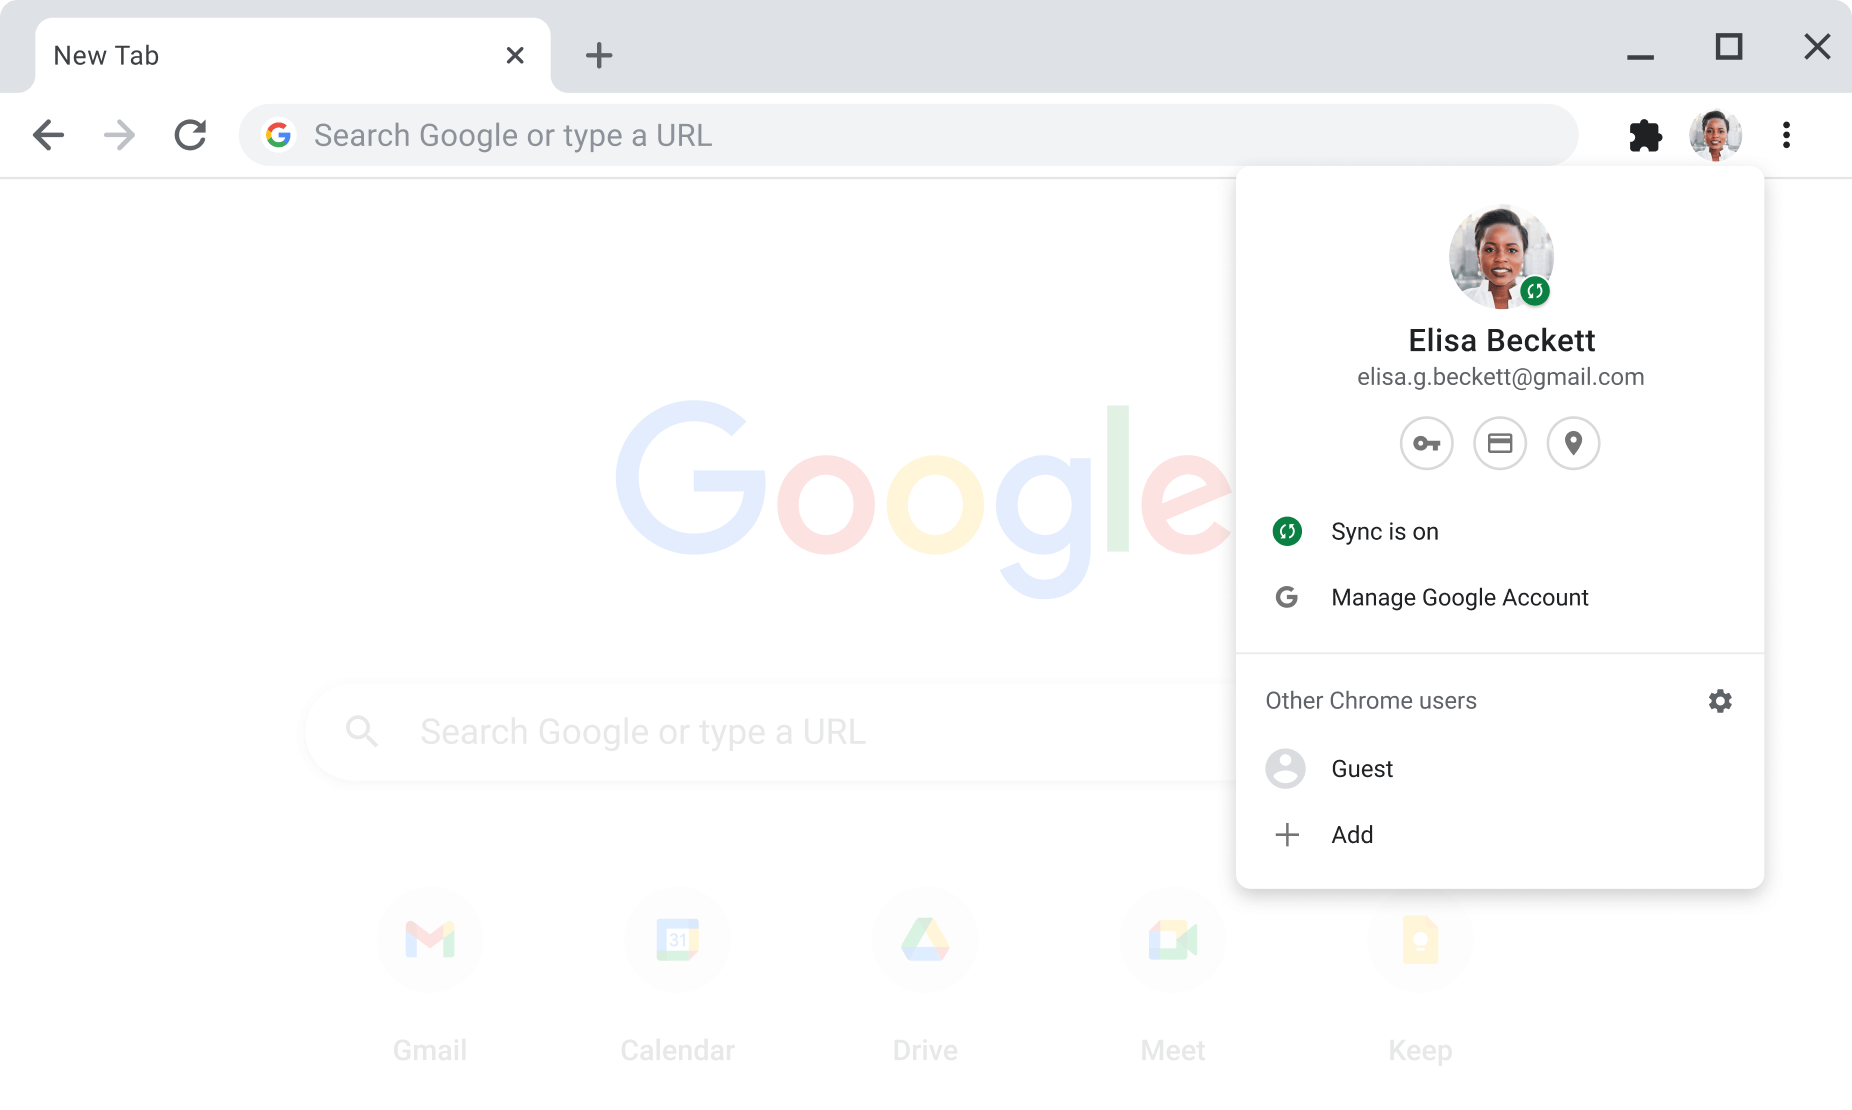 Chrome-browservenster met daarin de account- en synchronisatie-instellingen voor Google-accounts, waarbij synchronisatie is aangezet.